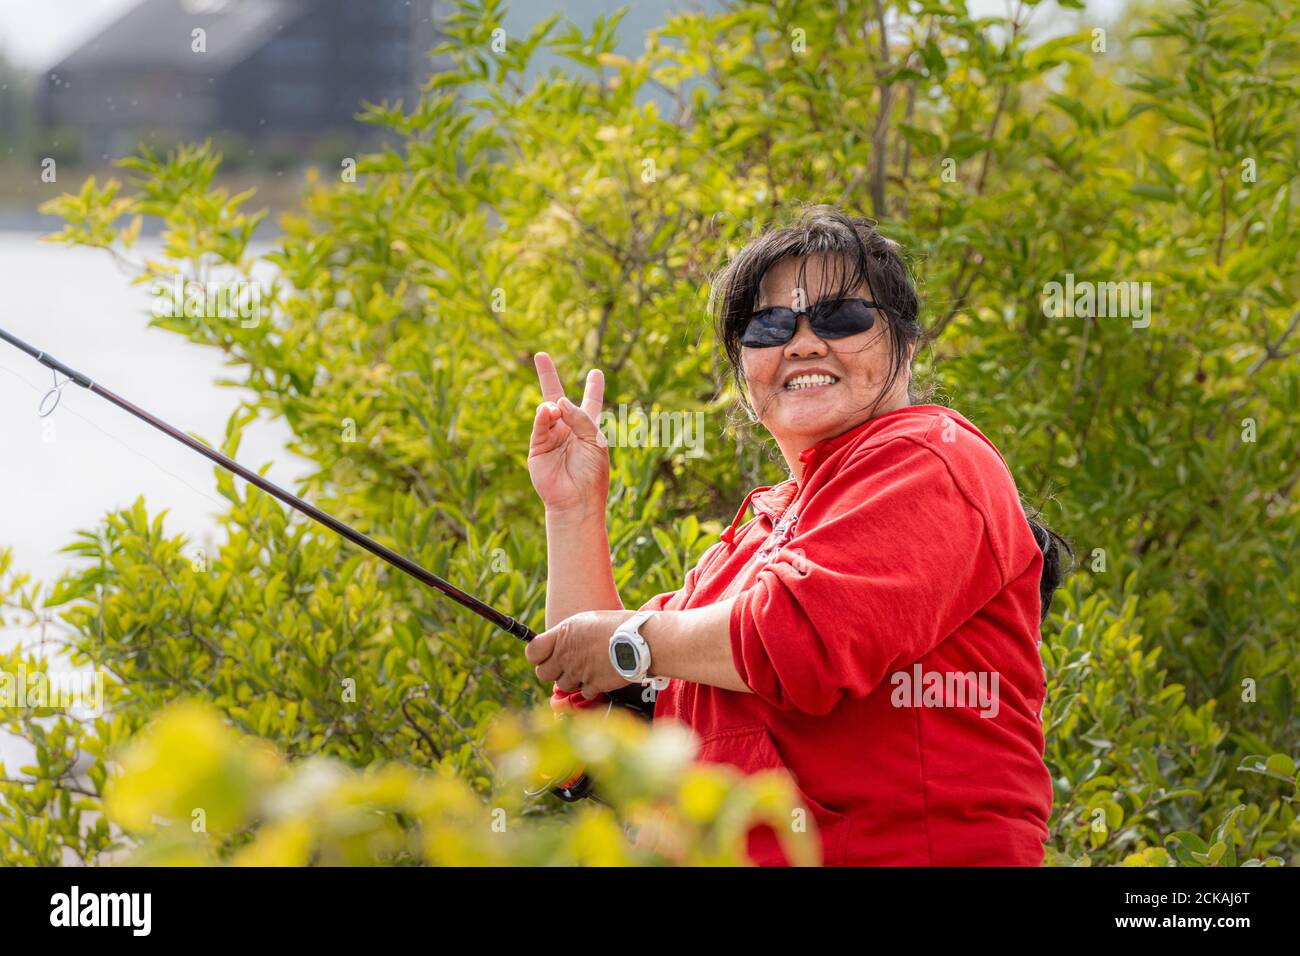 Woman holding fishing rod looking at camera hi-res stock